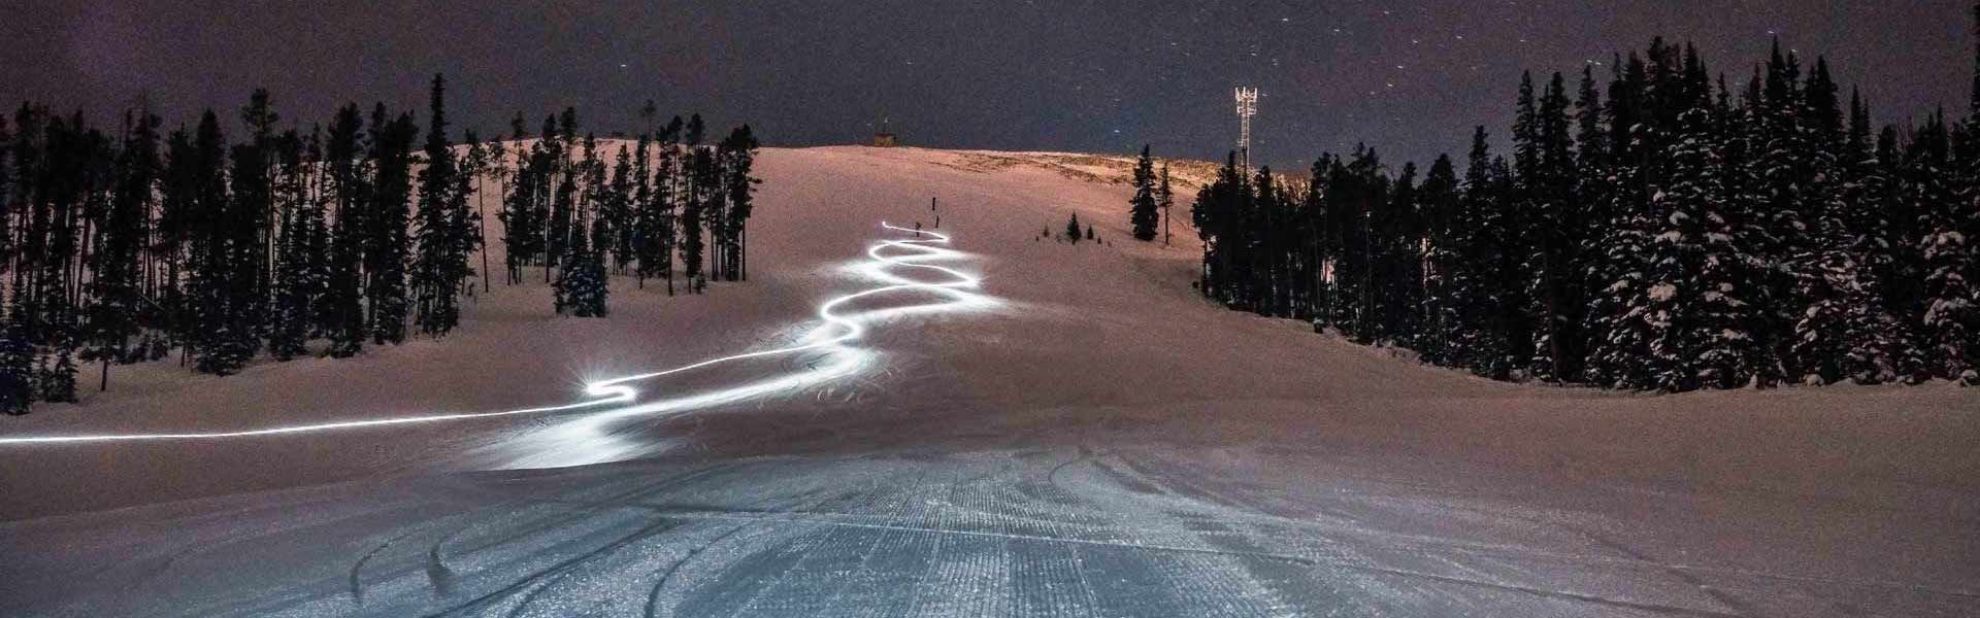 Headlamp Night skiers